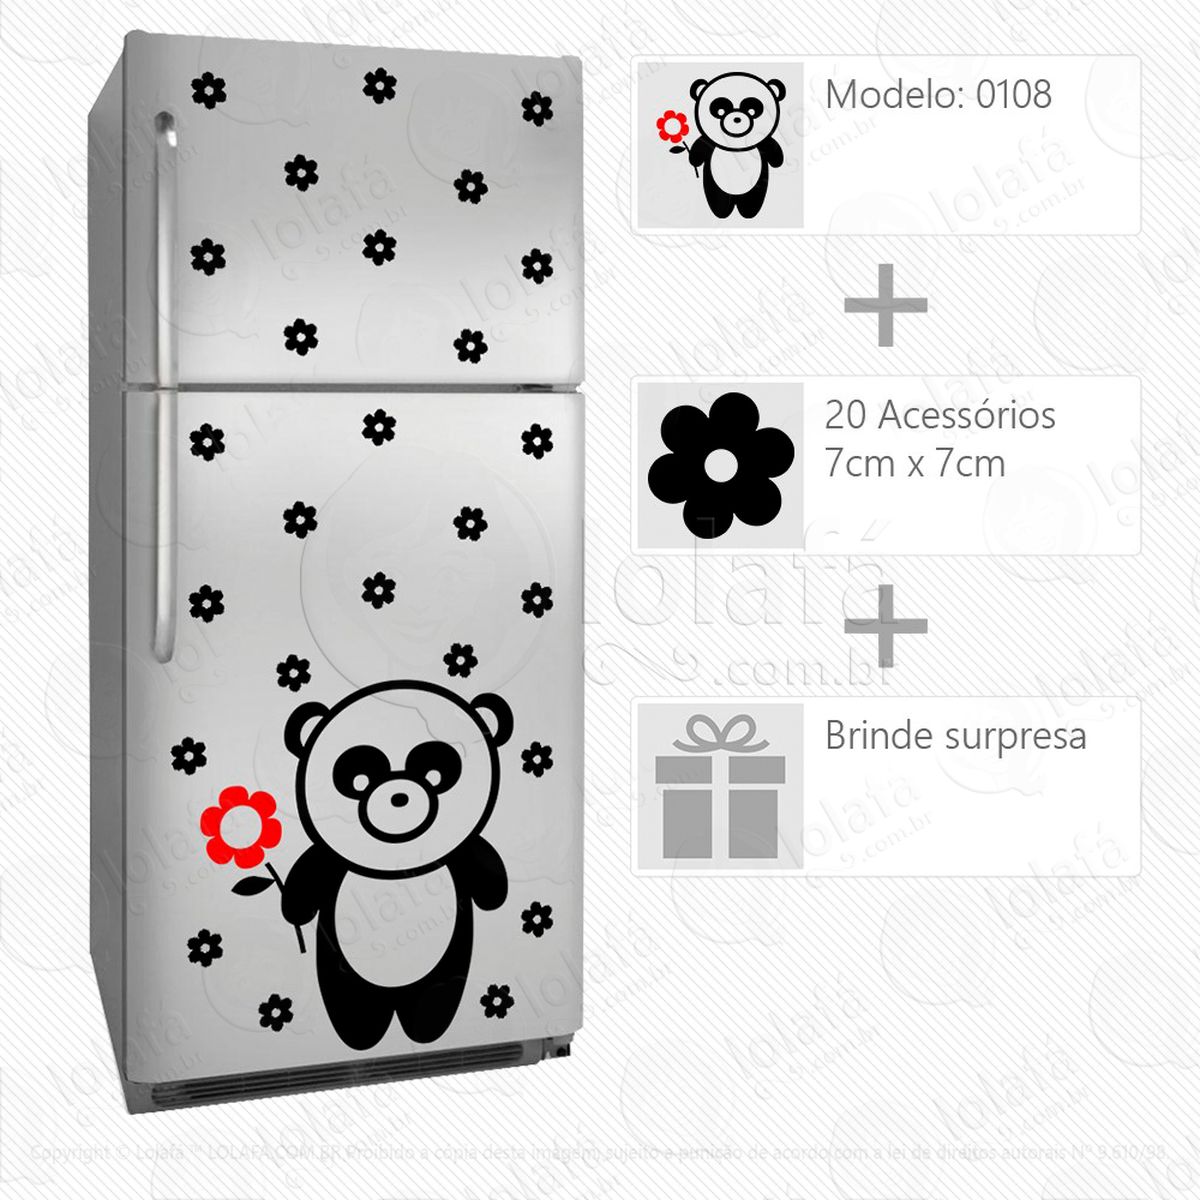 urso adesivo para geladeira e frigobar - mod:108